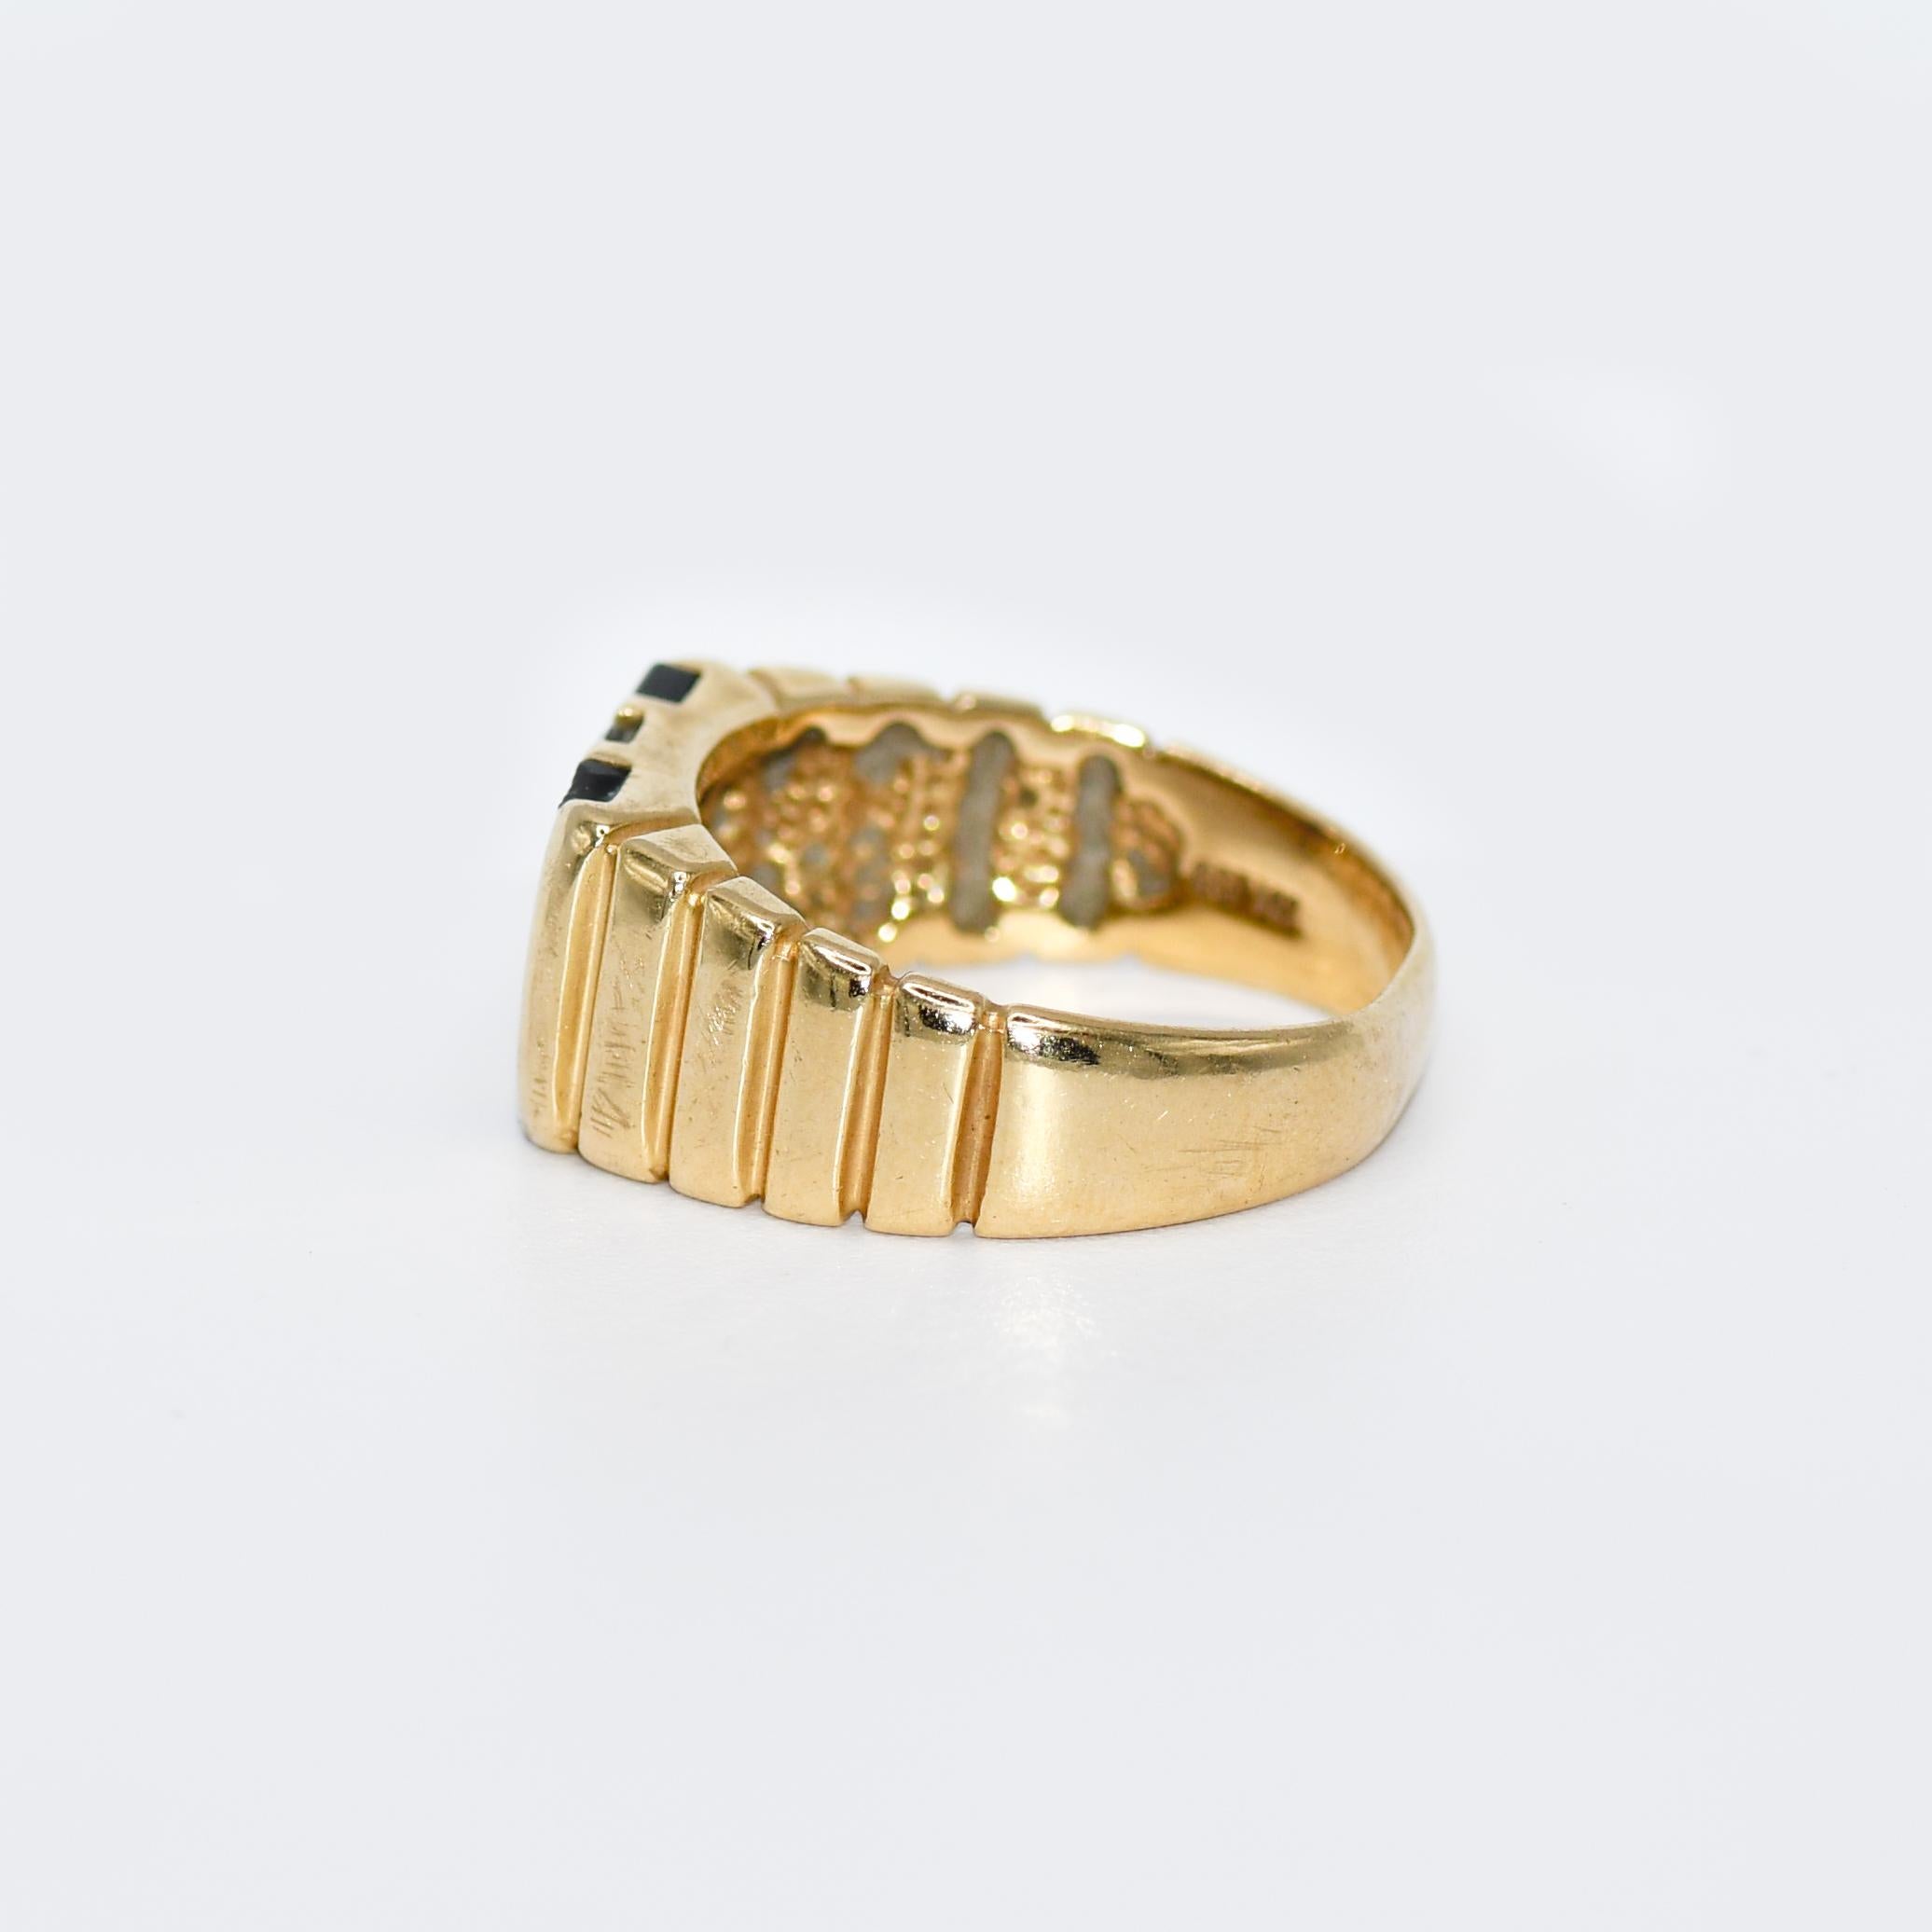 Women's or Men's 14K Yellow Gold Diamond & Onyx Ring, 7.5gr, .25TDW For Sale